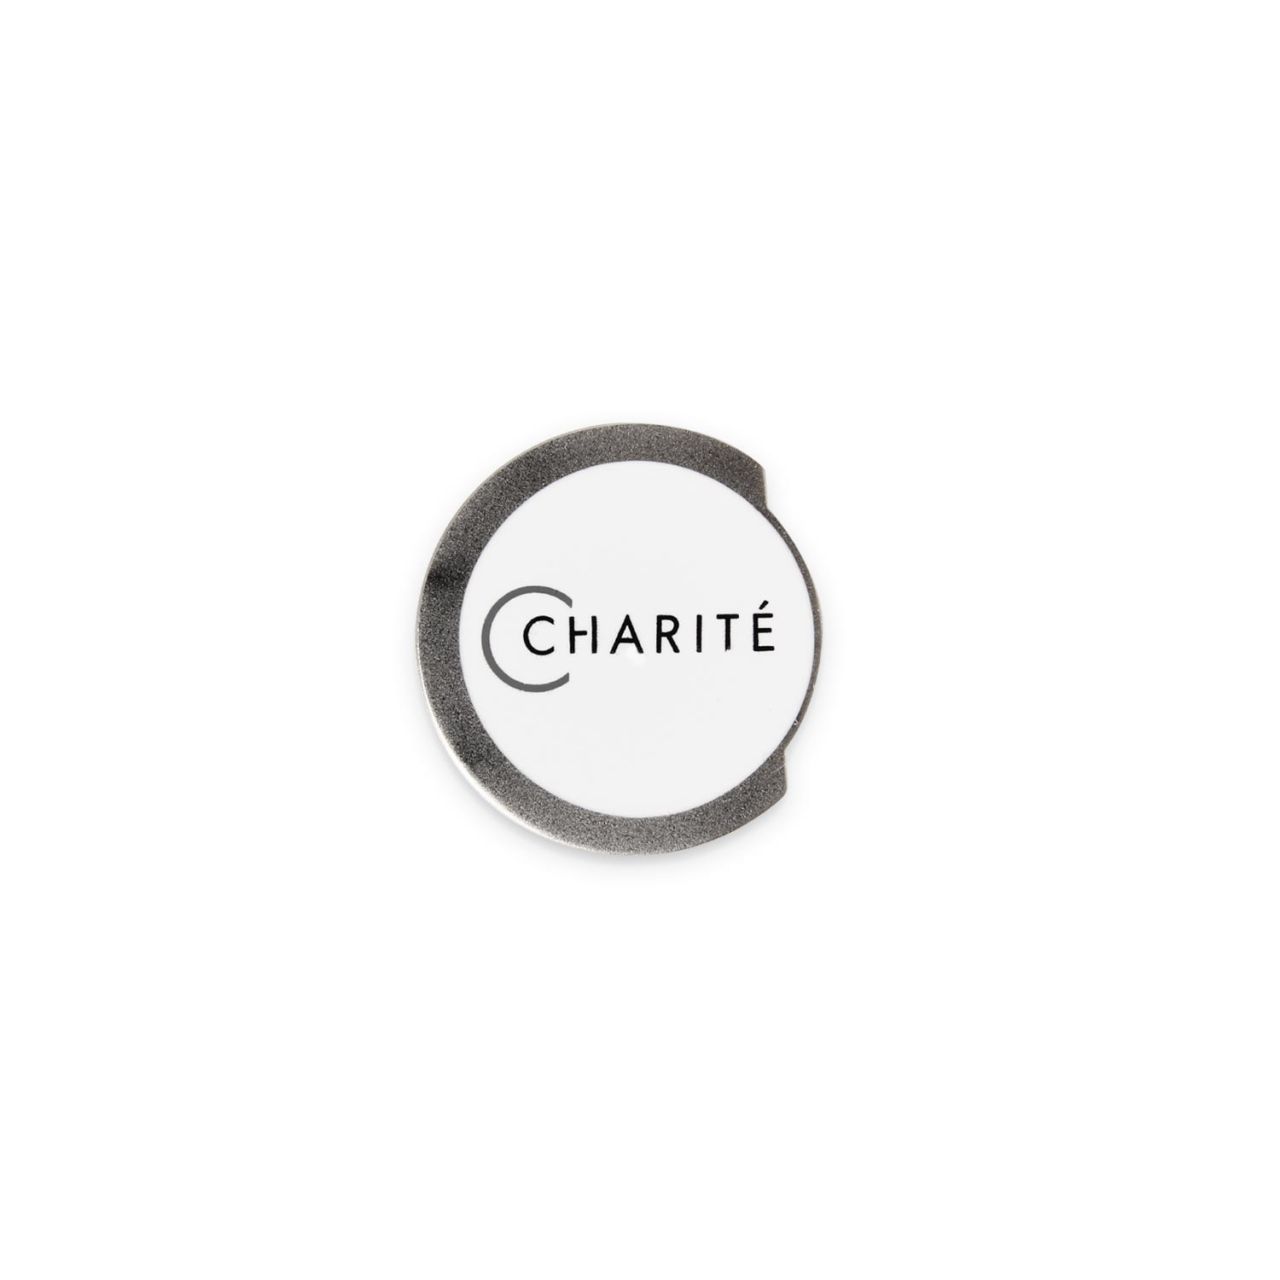 Ansteckpin, silber, Charité-Logo